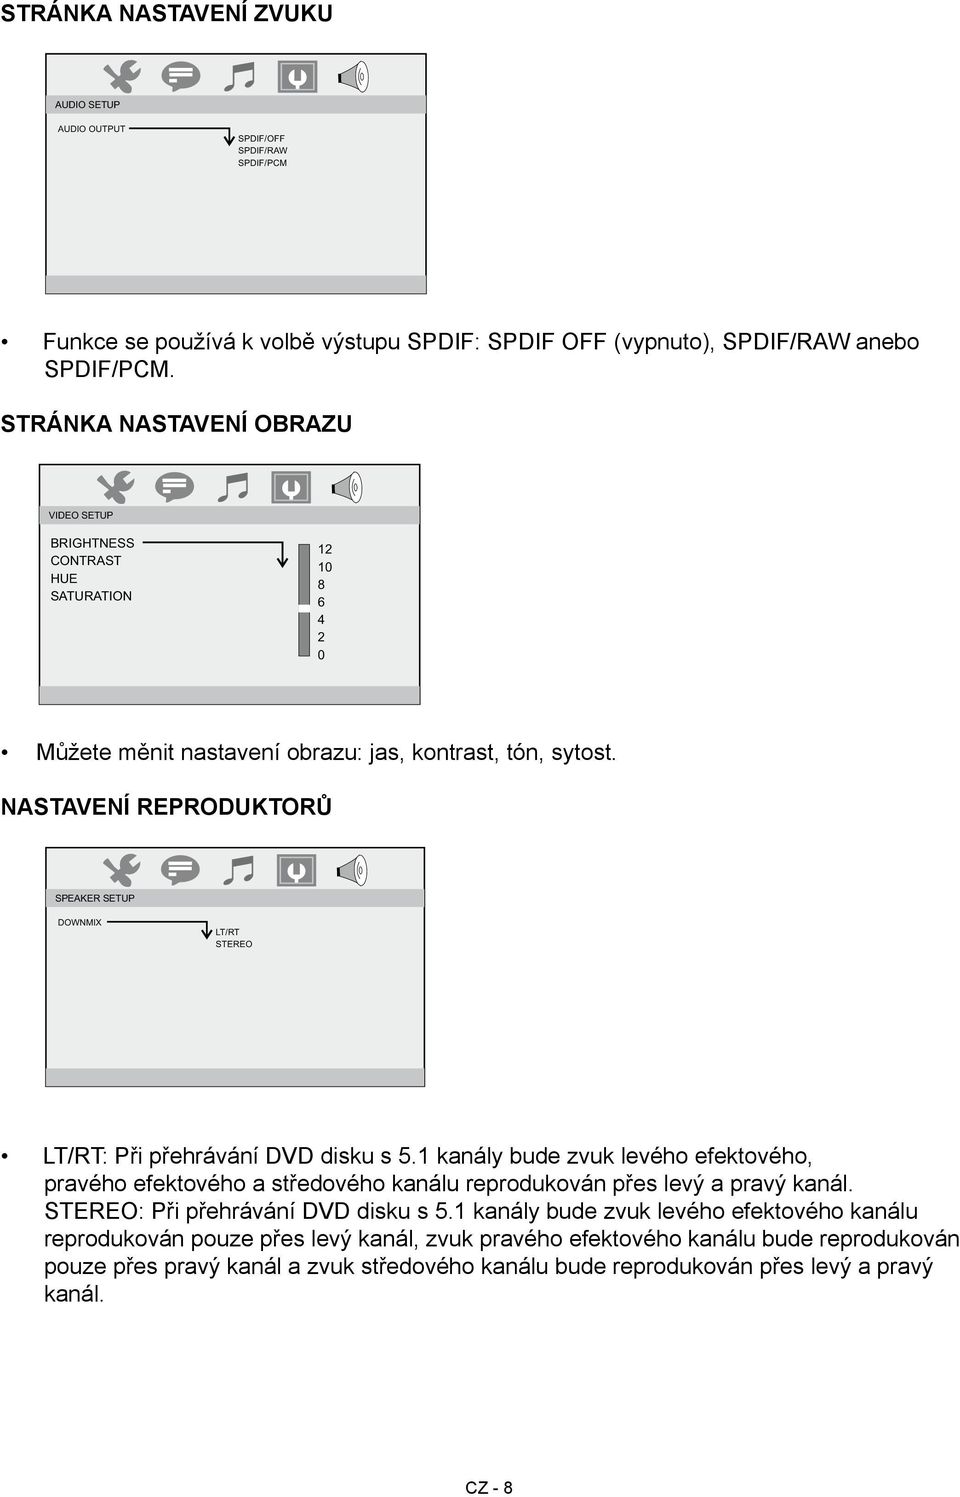 Nastavení reproduktorů SPEAKER SETUP -- DOWNMIX LT/RT STEREO LT/RT: Při přehrávání DVD disku s 5.